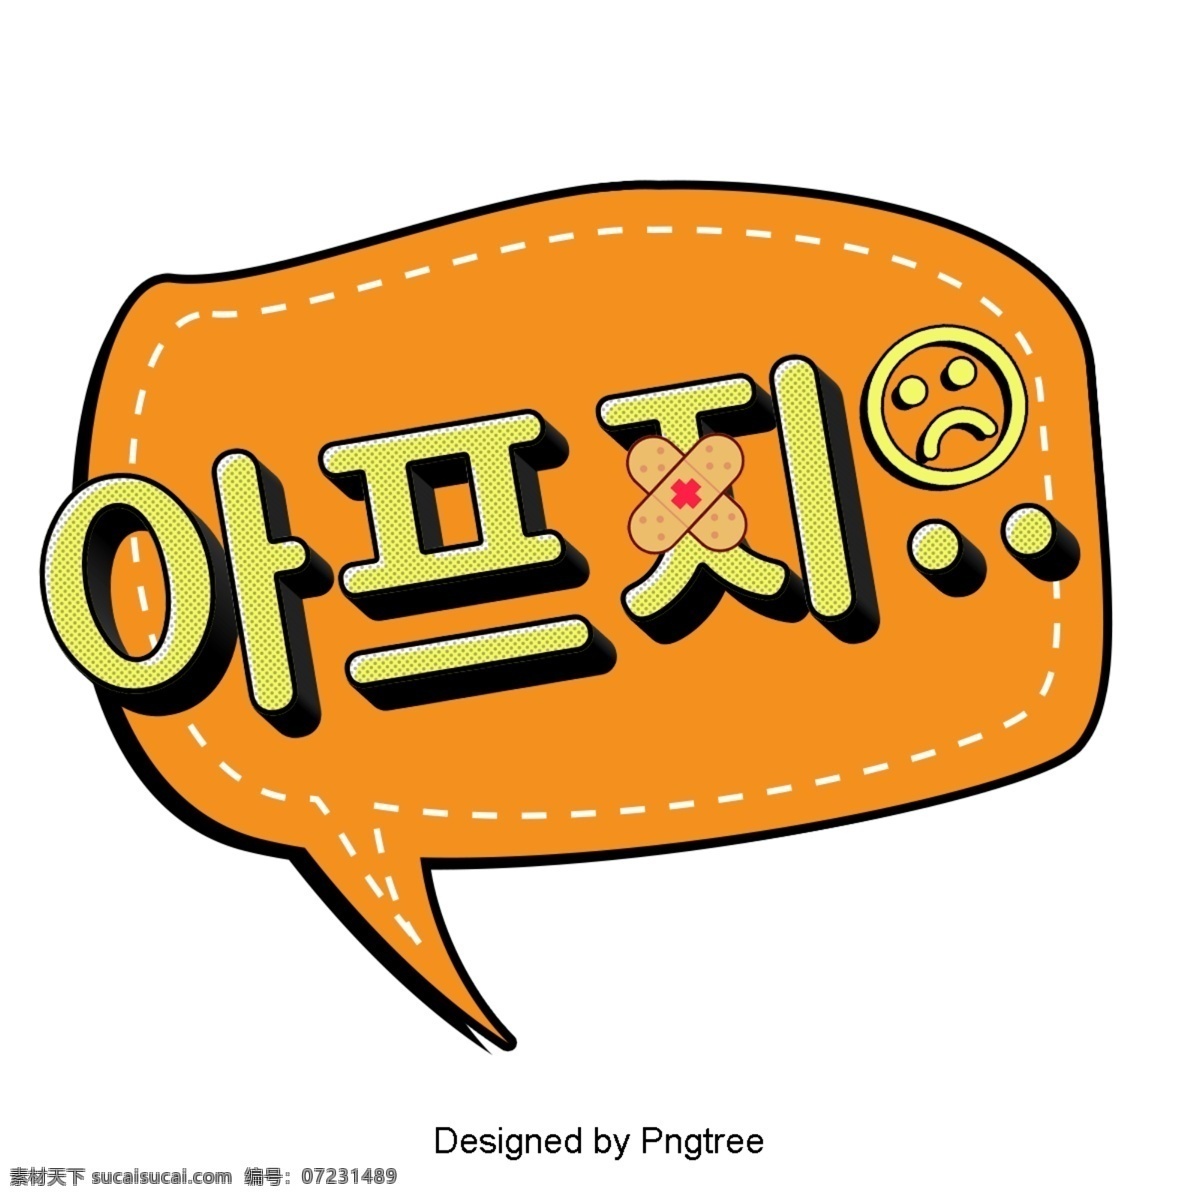 生病 的卡 通 字体 耳语 疼痛 动画片 简单 韩国 语风 现场 对话泡泡 装饰 帧 现代 时尚 伤心 橙子